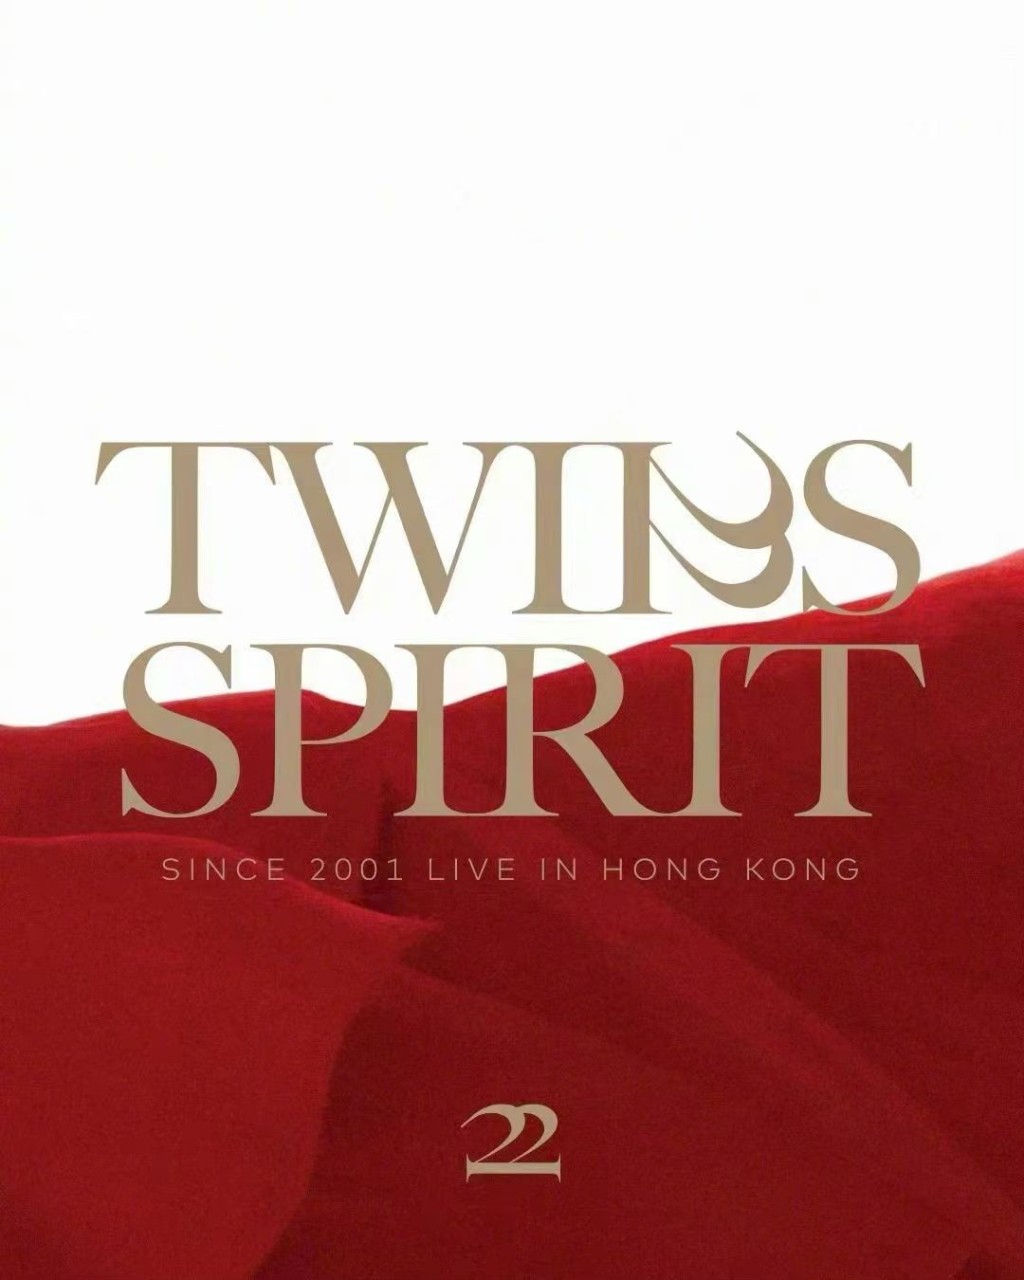 第三款是「TWINS SPIRIT」在正中間位置的款式。